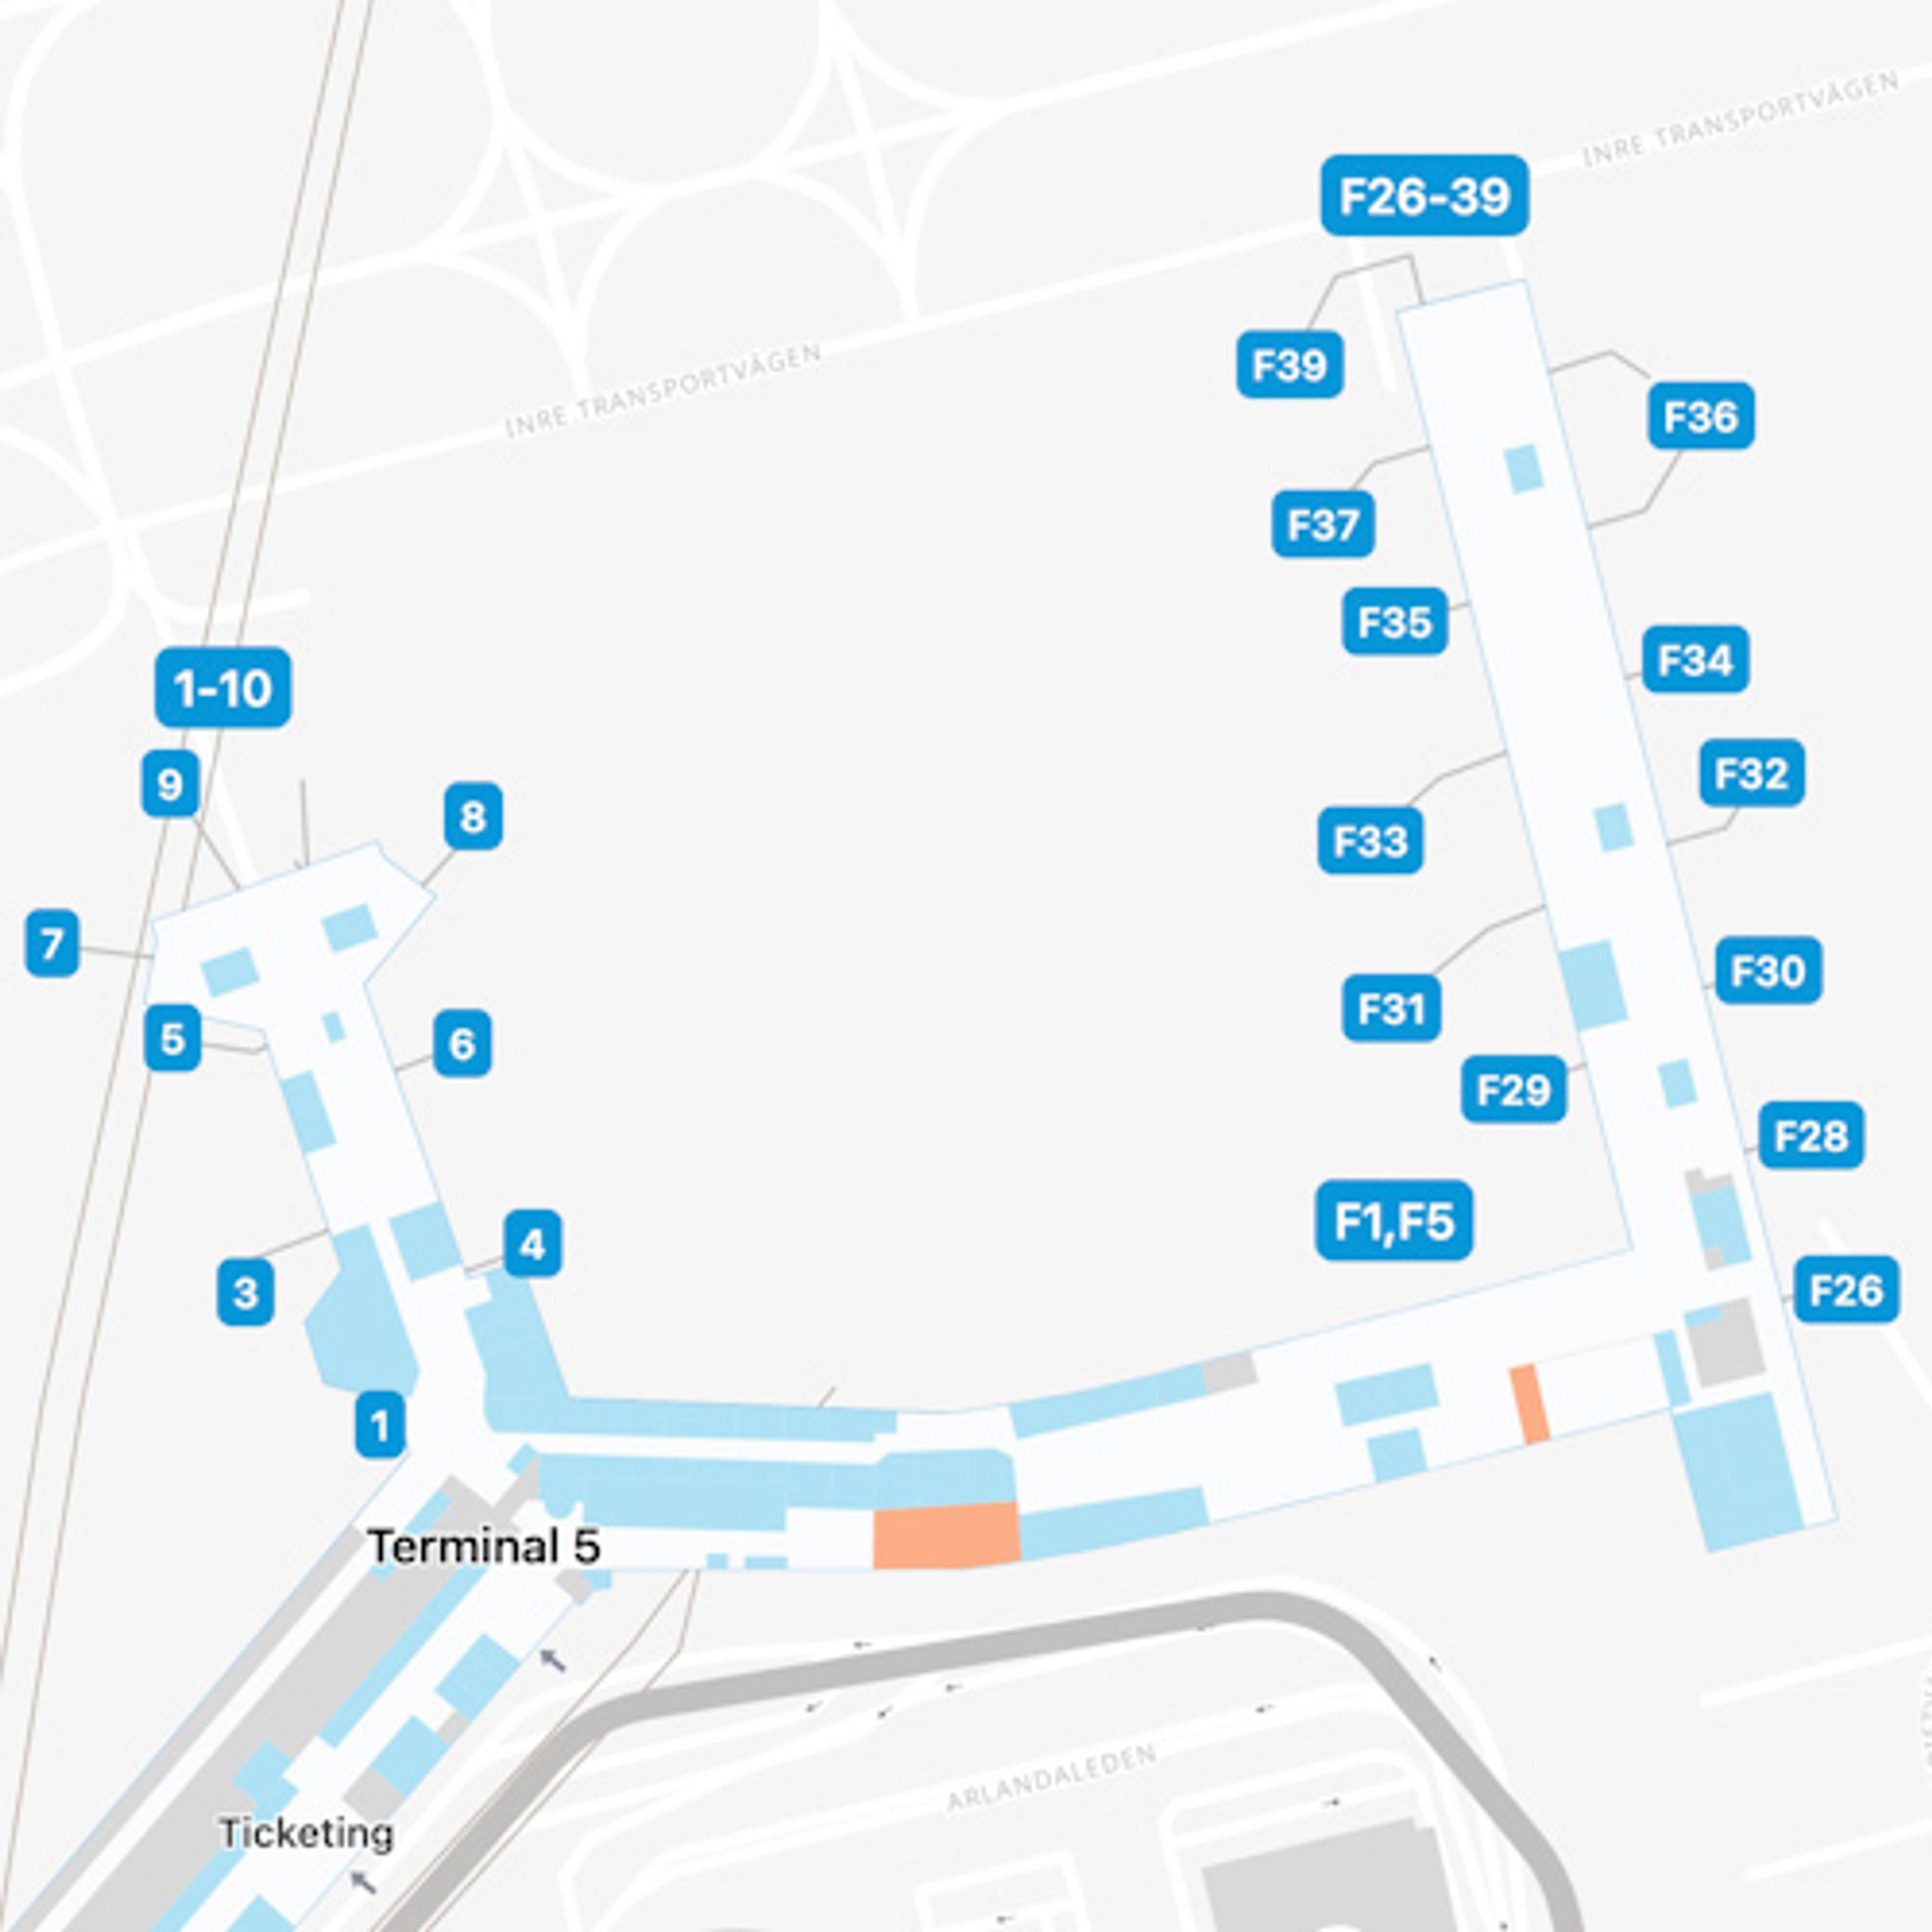 Stockholm Arlanda Airport ARN Terminal 5 Map